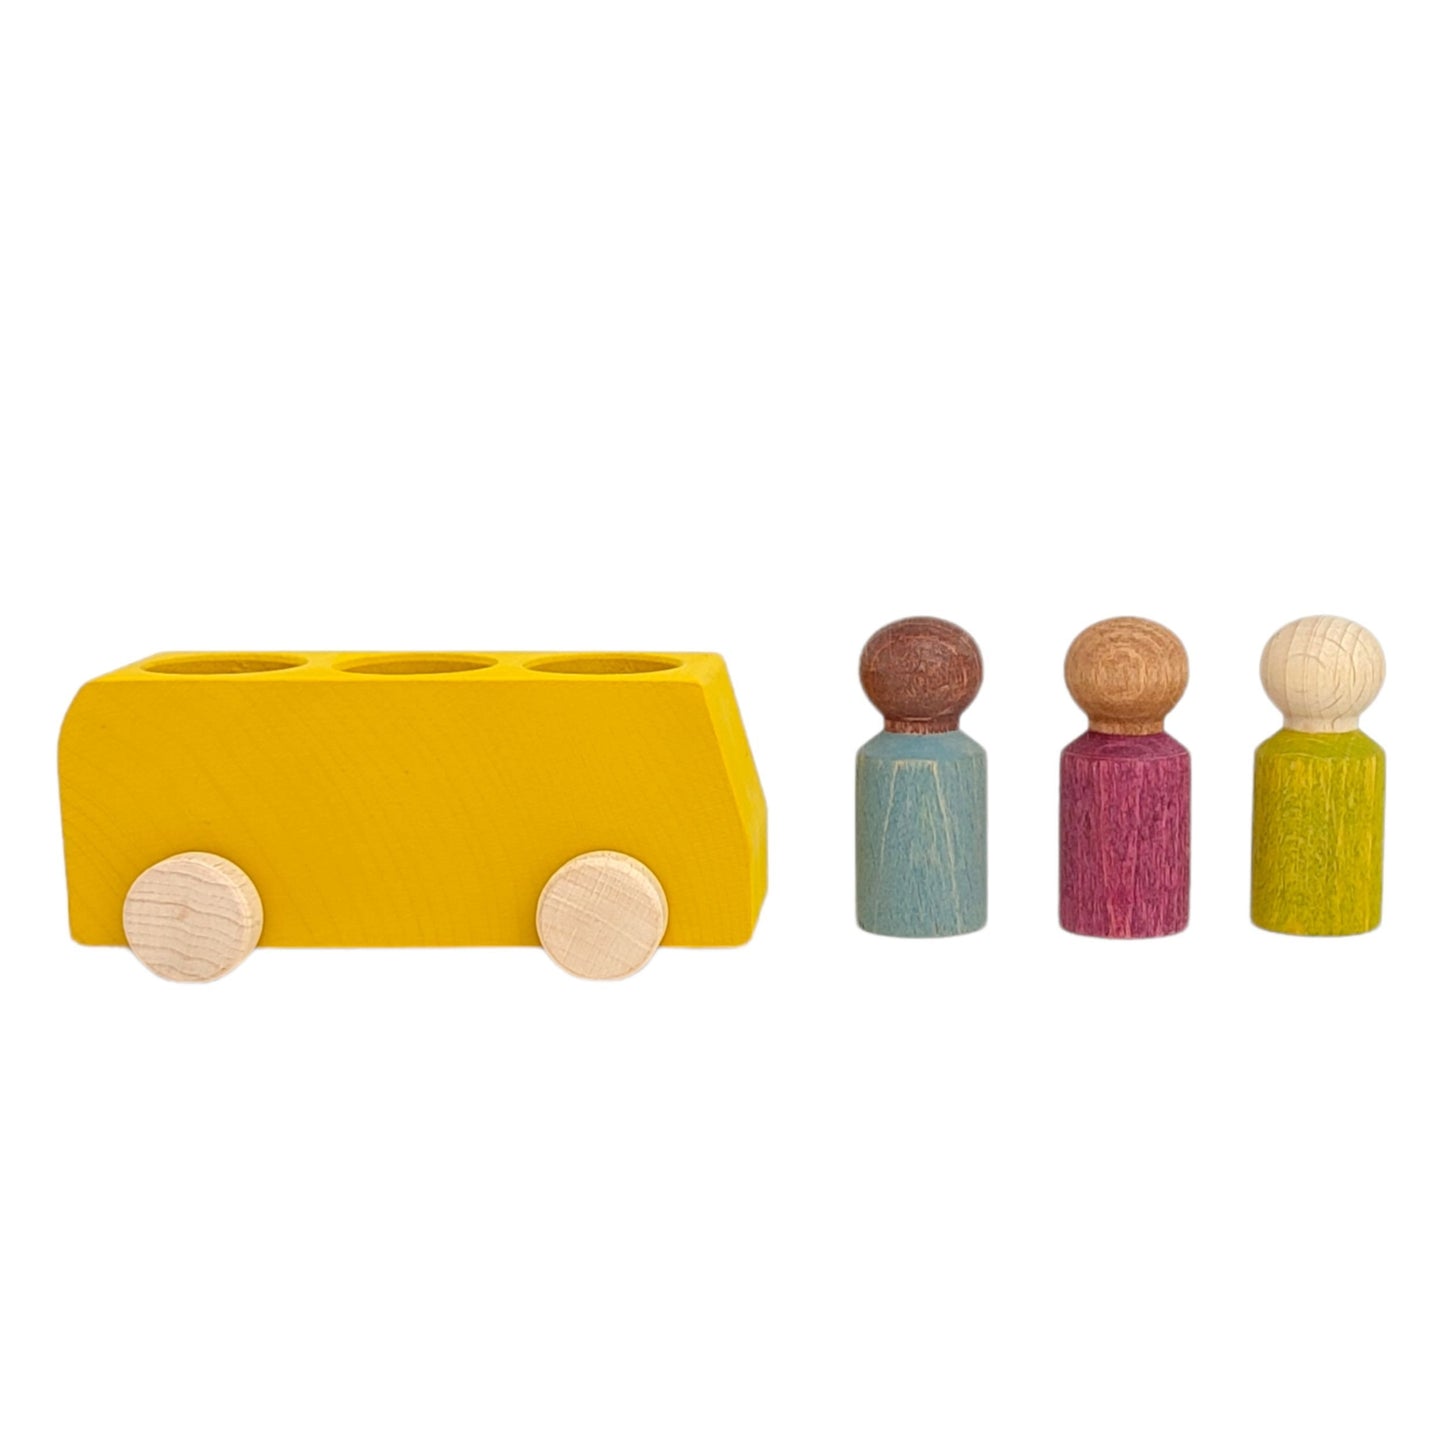 Bus jaune Lubulona avec 3 figurines 